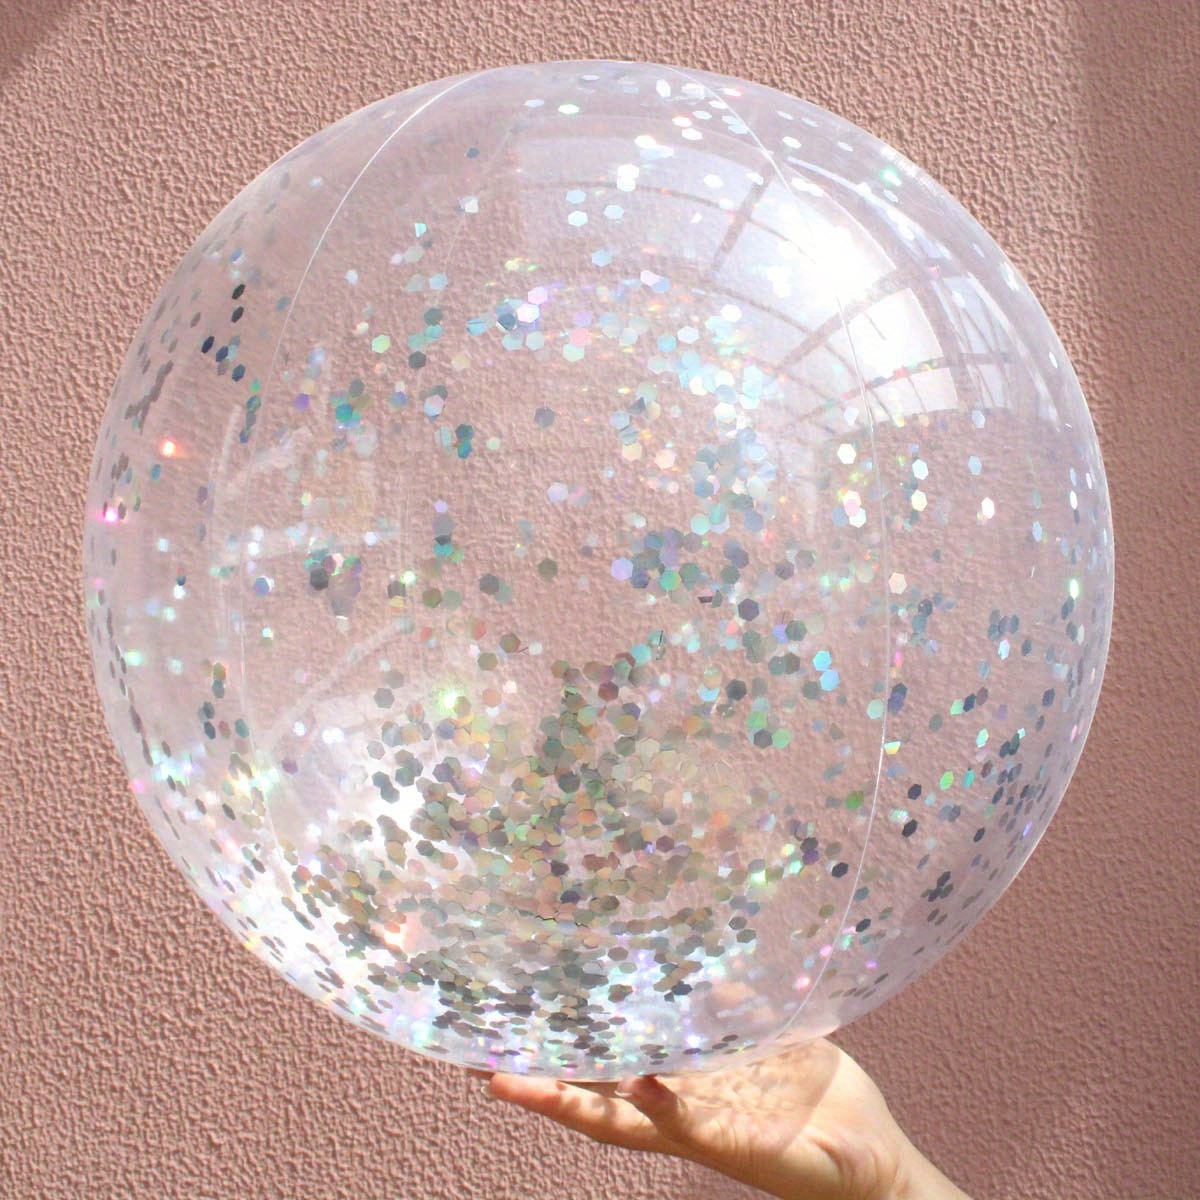 Ballon de Plage Jouets Paillettes Gonflable Piscine Eau Jouet (Argent 60cm)  fr 